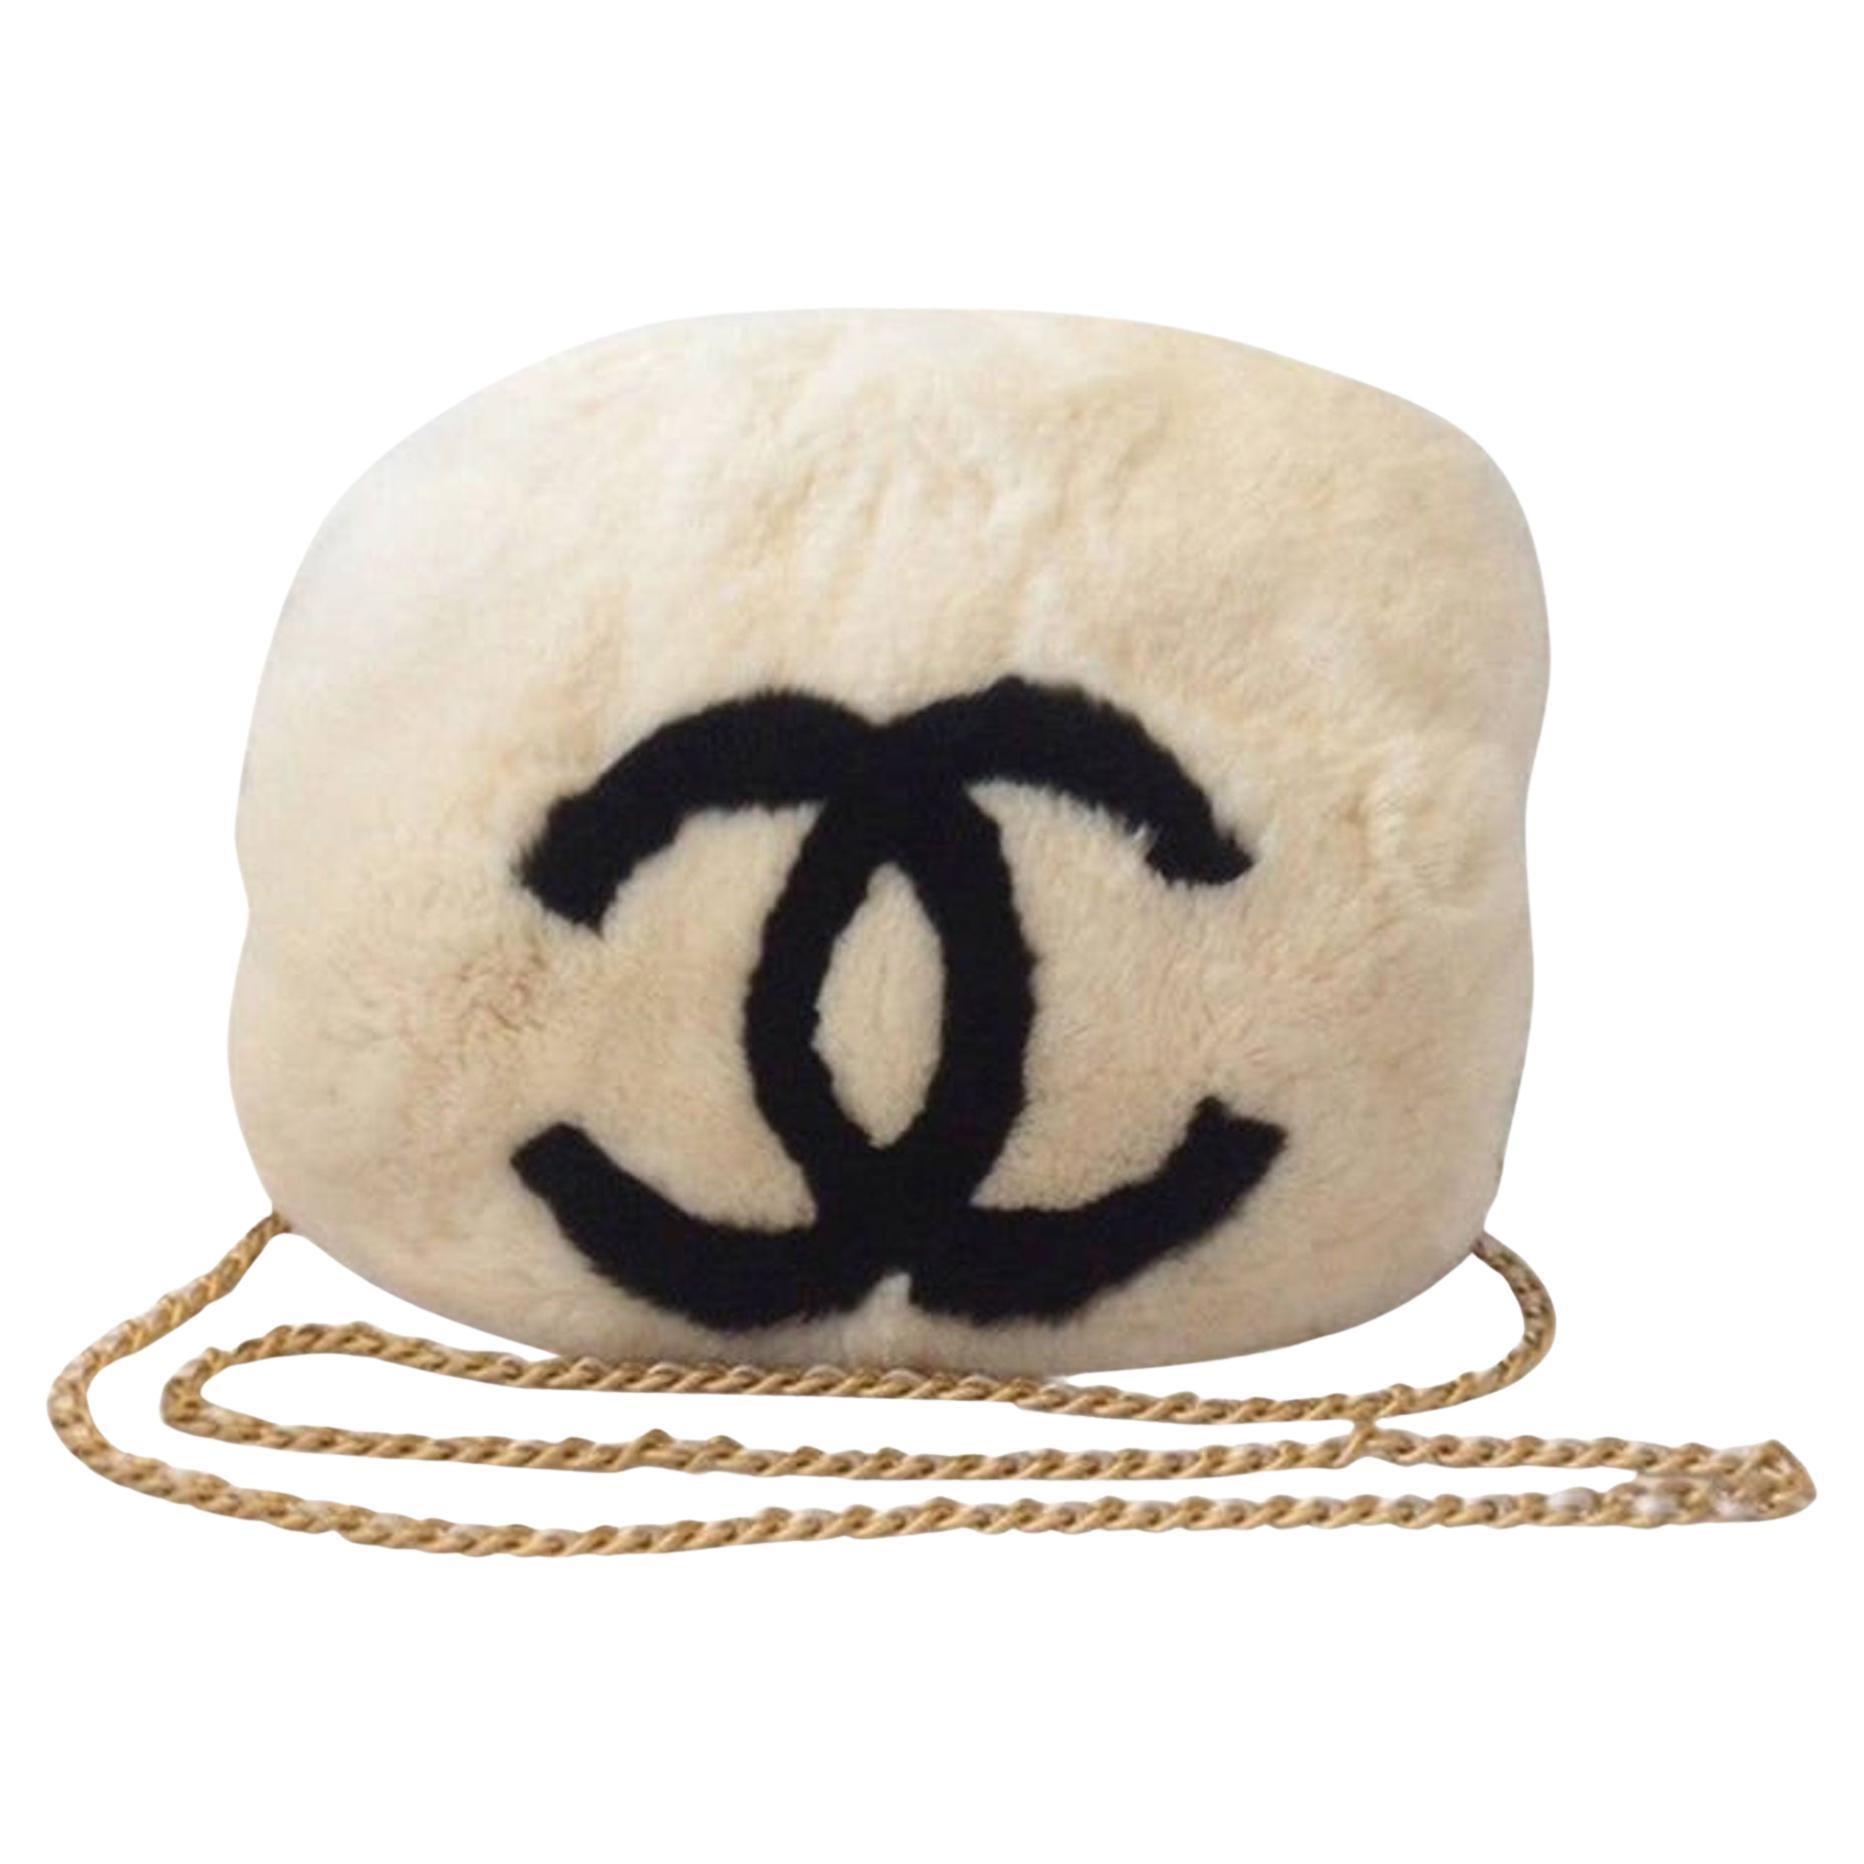 Chanel' Weiß CC Kaninchen Muff

CC-Logo
Goldfarbene Hardware
Abnehmbare, gebürstete, goldfarbene, verflochtene Kette
Weißes Kaninchenfell
Gefüllt mit Daunen
Schwarzes Satinfutter
Kette fallen: 19